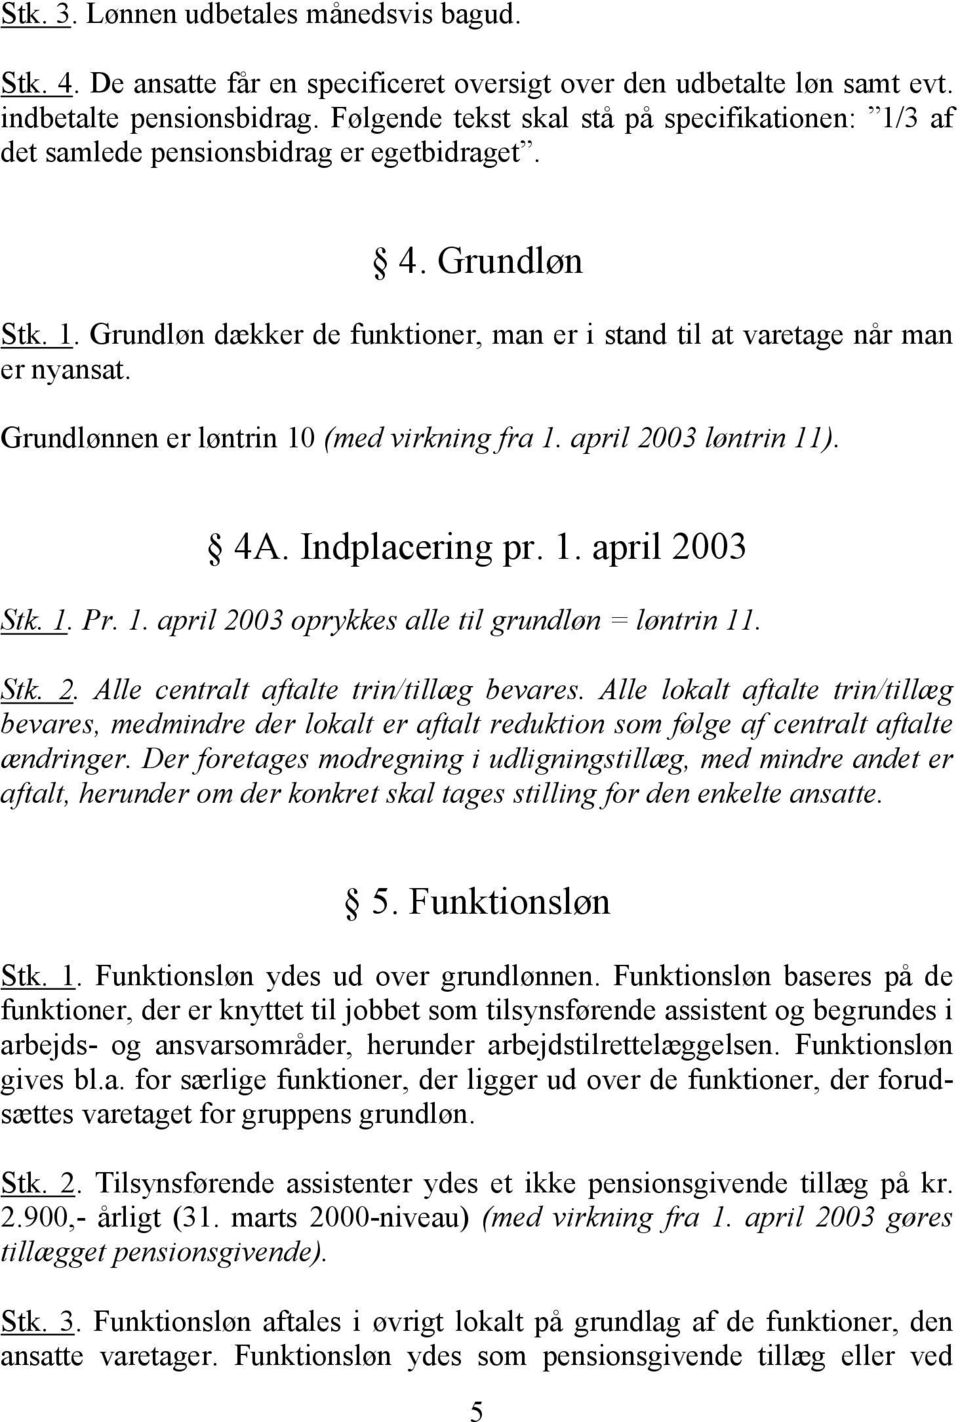 Grundlønnen er løntrin 10 (med virkning fra 1. april 2003 løntrin 11). 4A. Indplacering pr. 1. april 2003 Stk. 1. Pr. 1. april 2003 oprykkes alle til grundløn = løntrin 11. Stk. 2. Alle centralt aftalte trin/tillæg bevares.